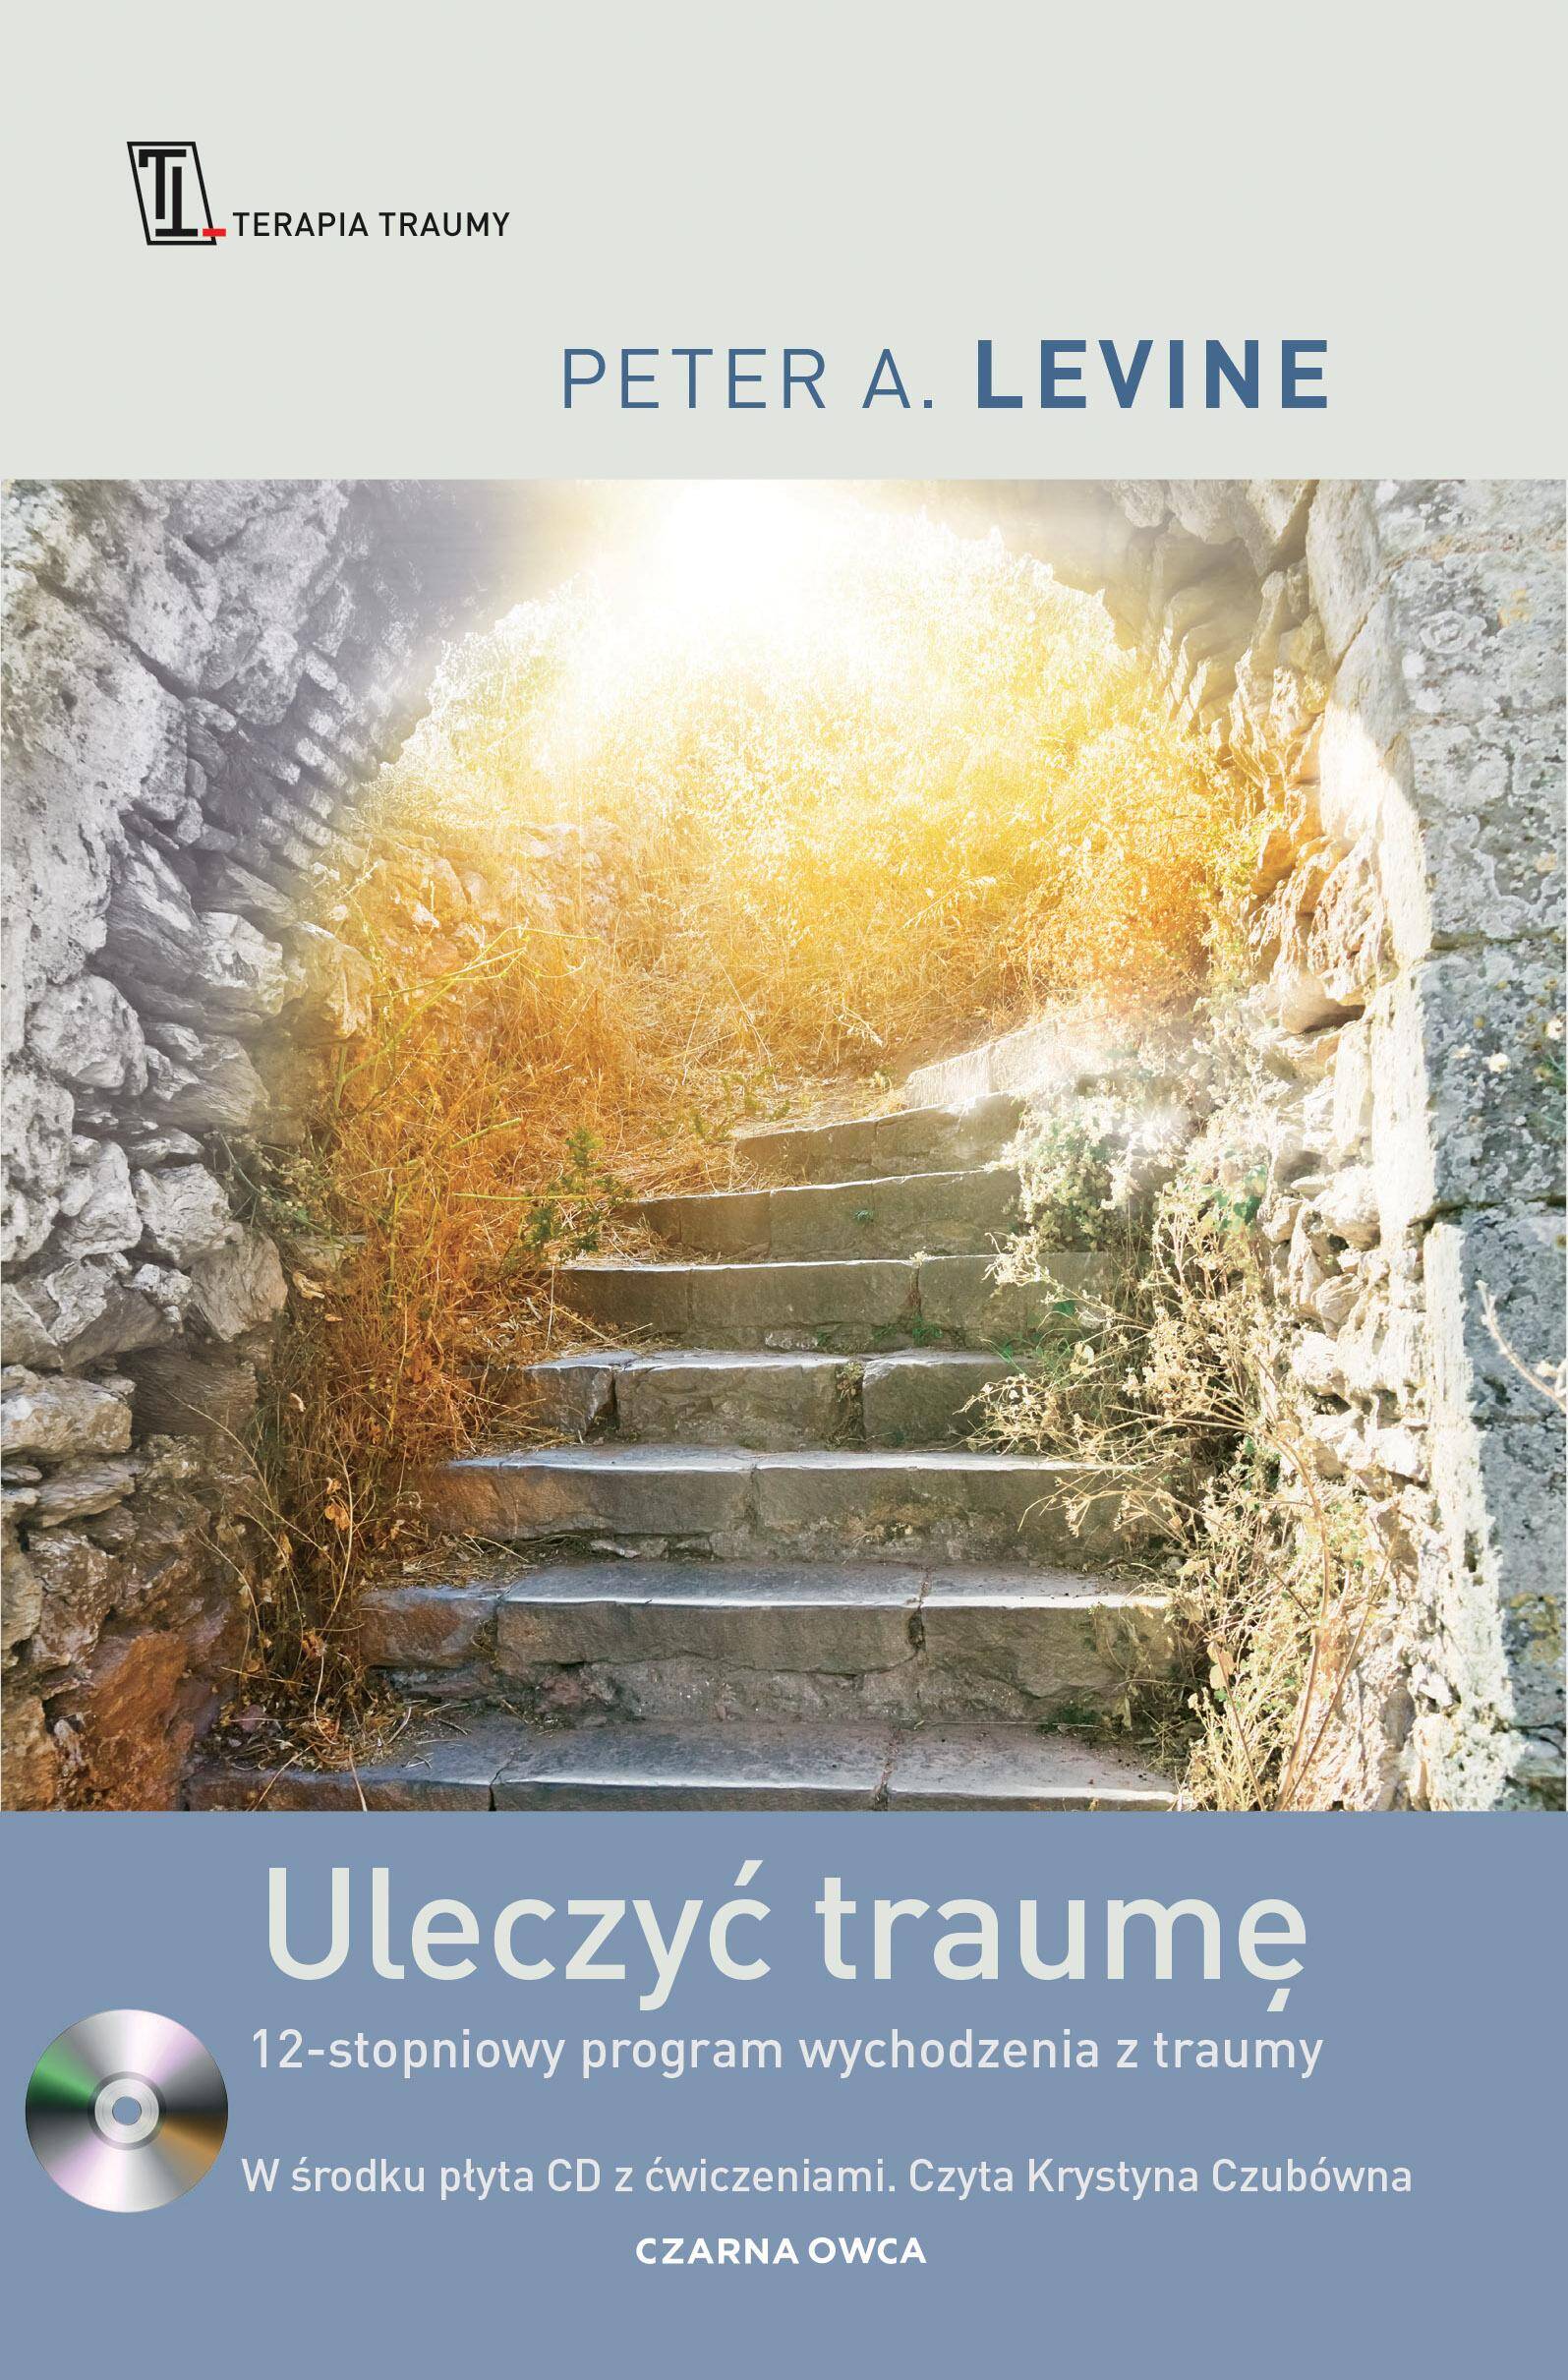 Uleczyć traumę. 12-stopniowy program wychodzenia z traumy wyd. 12